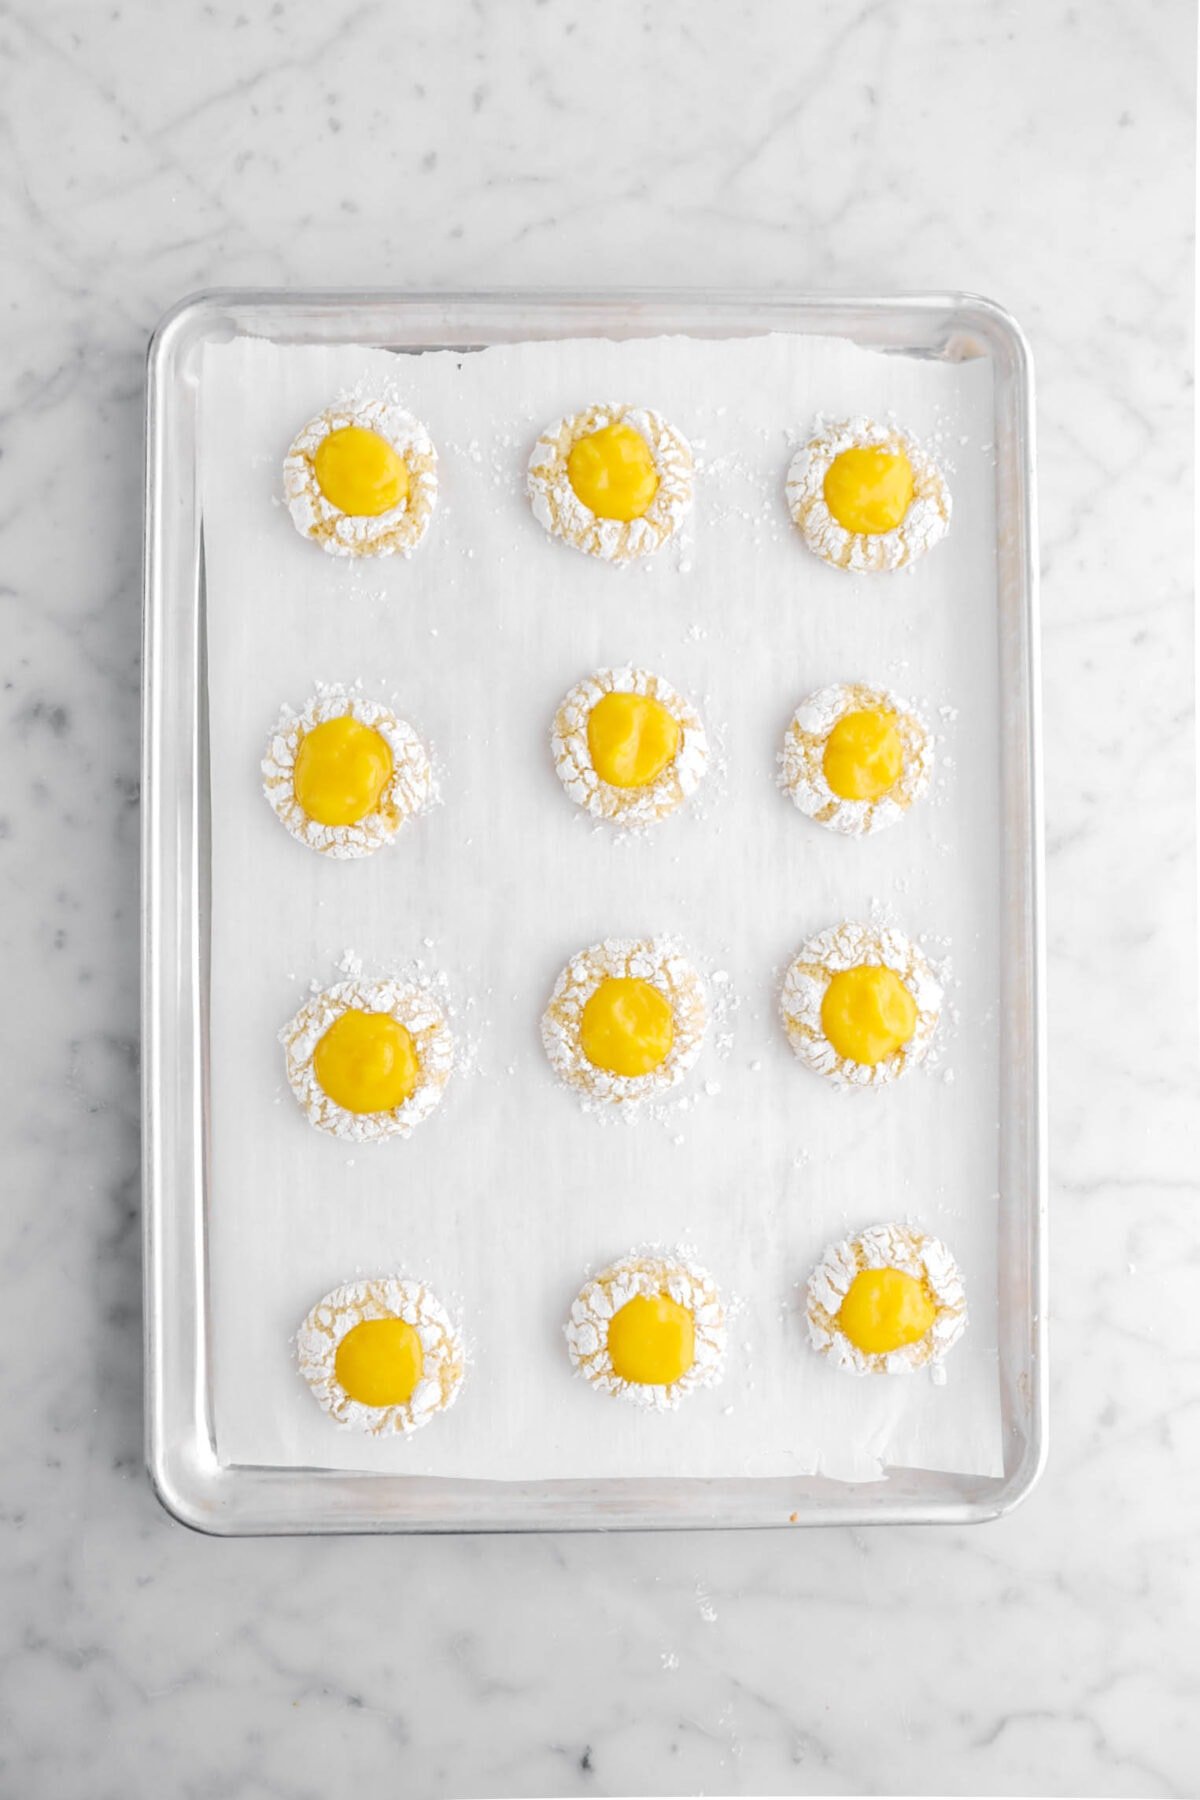 lemon curd filled crinkle cookies on lined sheet pan.